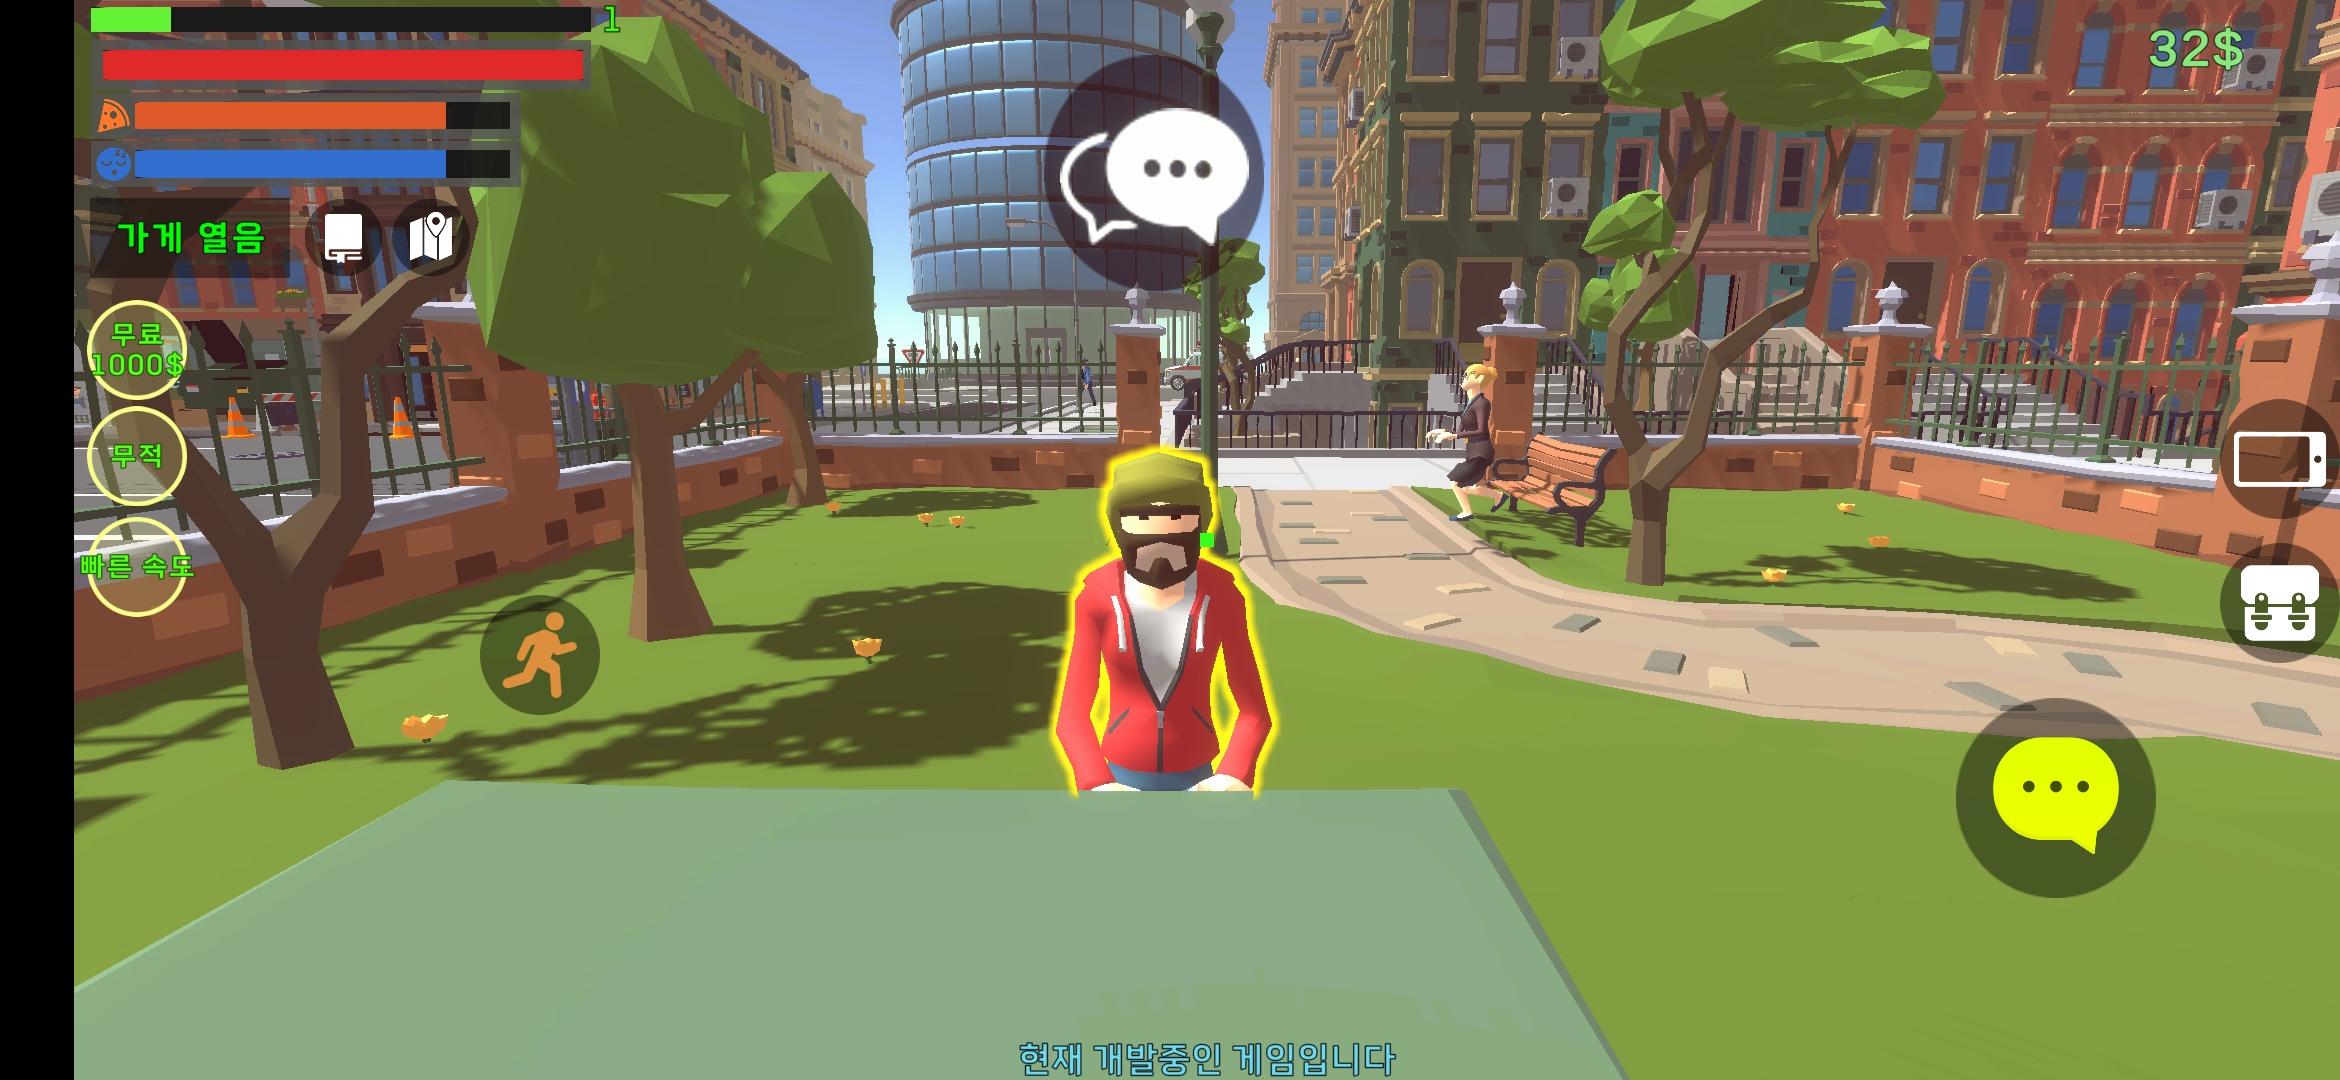 Simulador de Internet Cafe para jogos versão móvel andróide iOS apk baixar  gratuitamente-TapTap